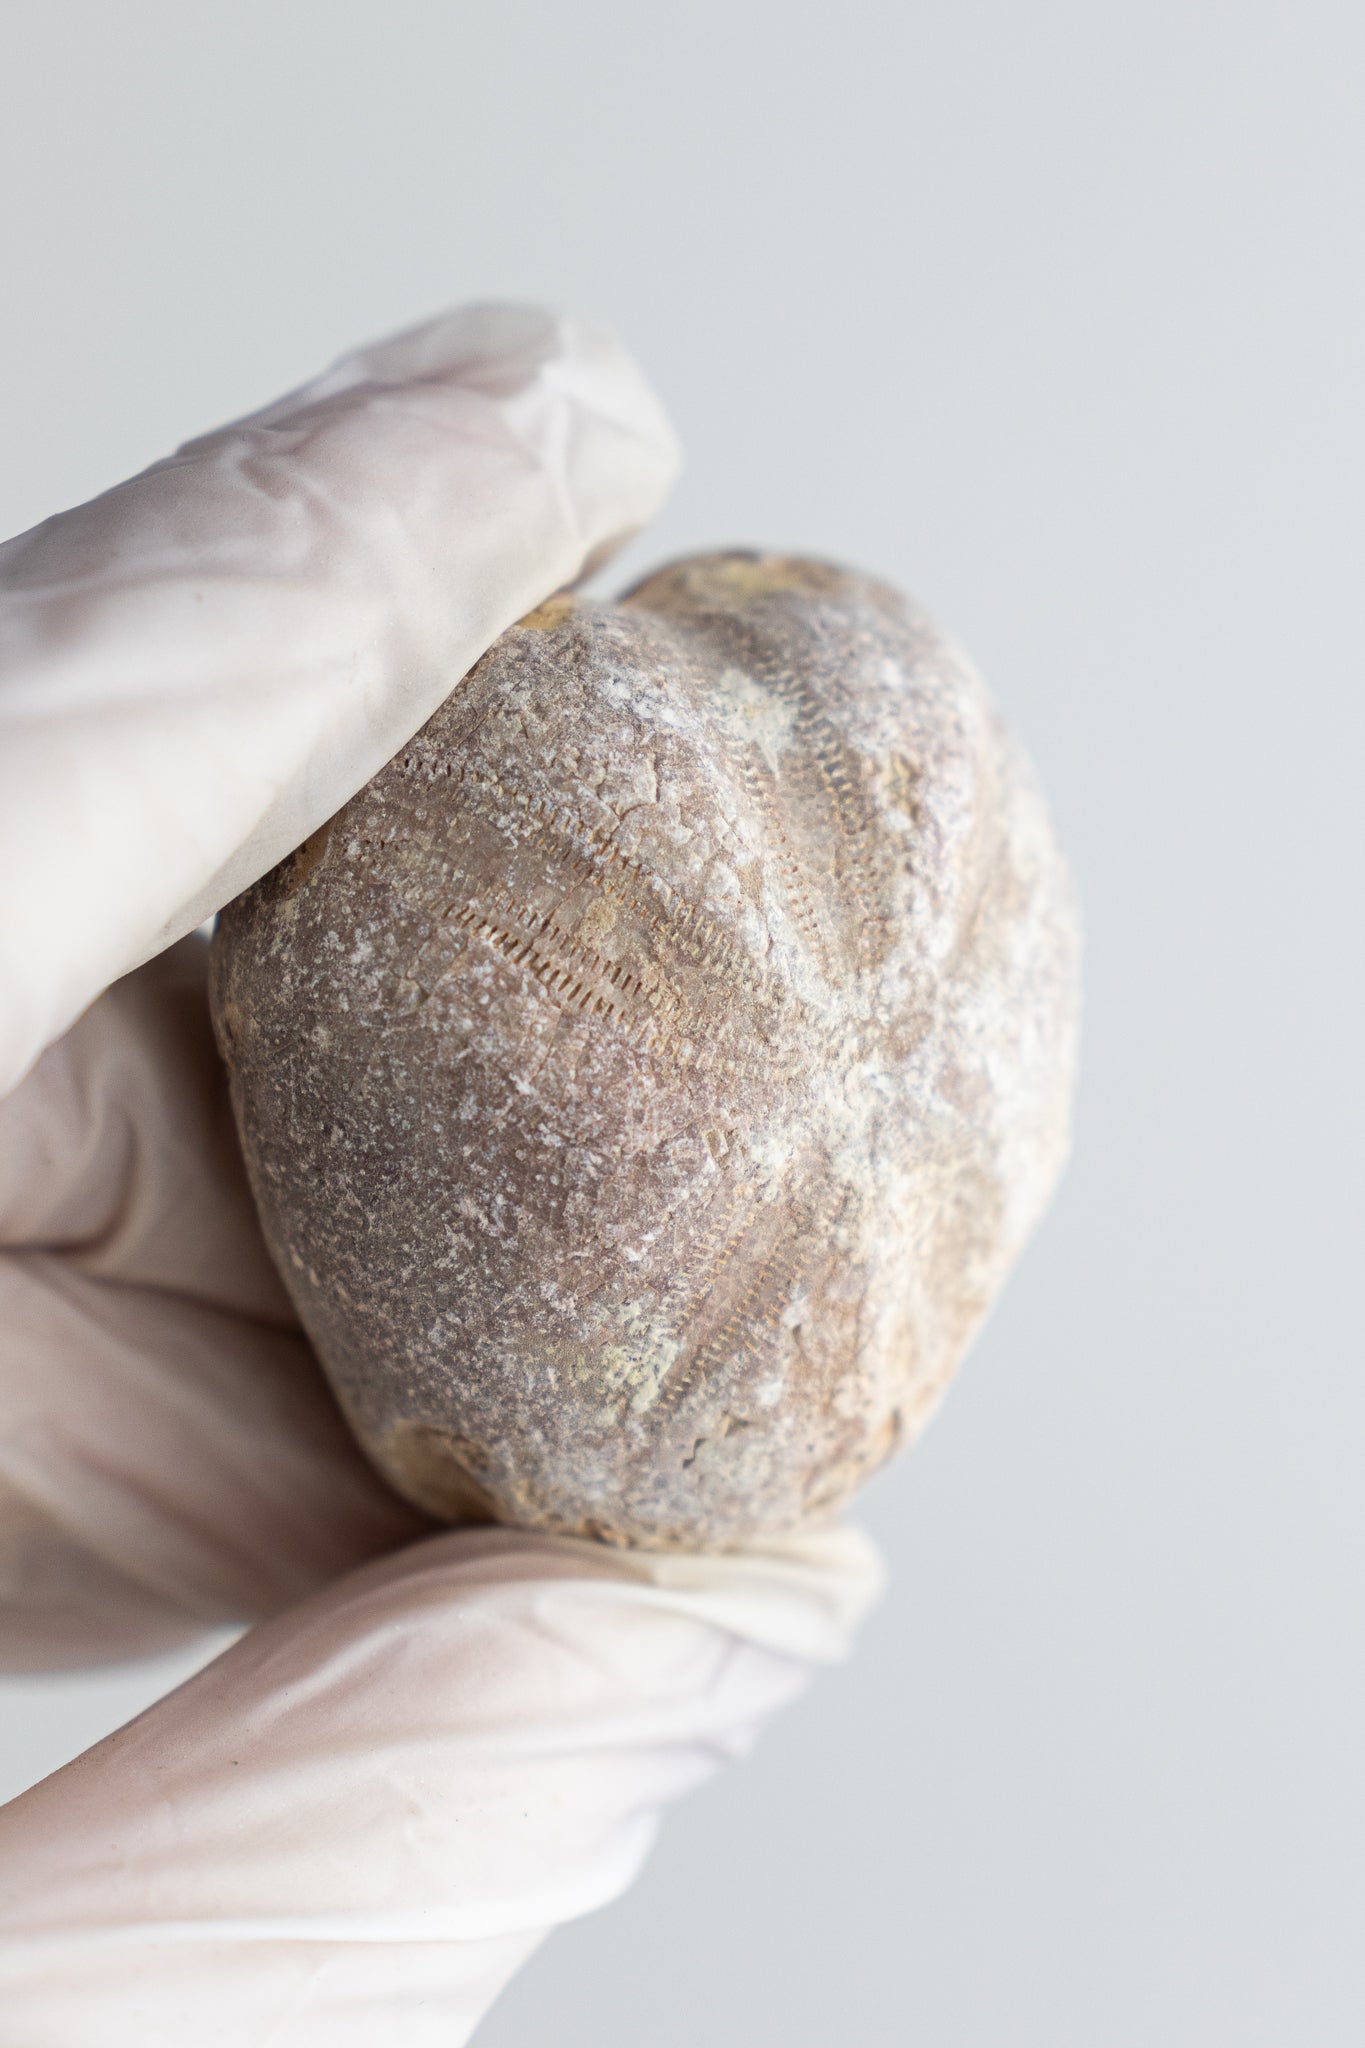 Heart Urchin Fossil